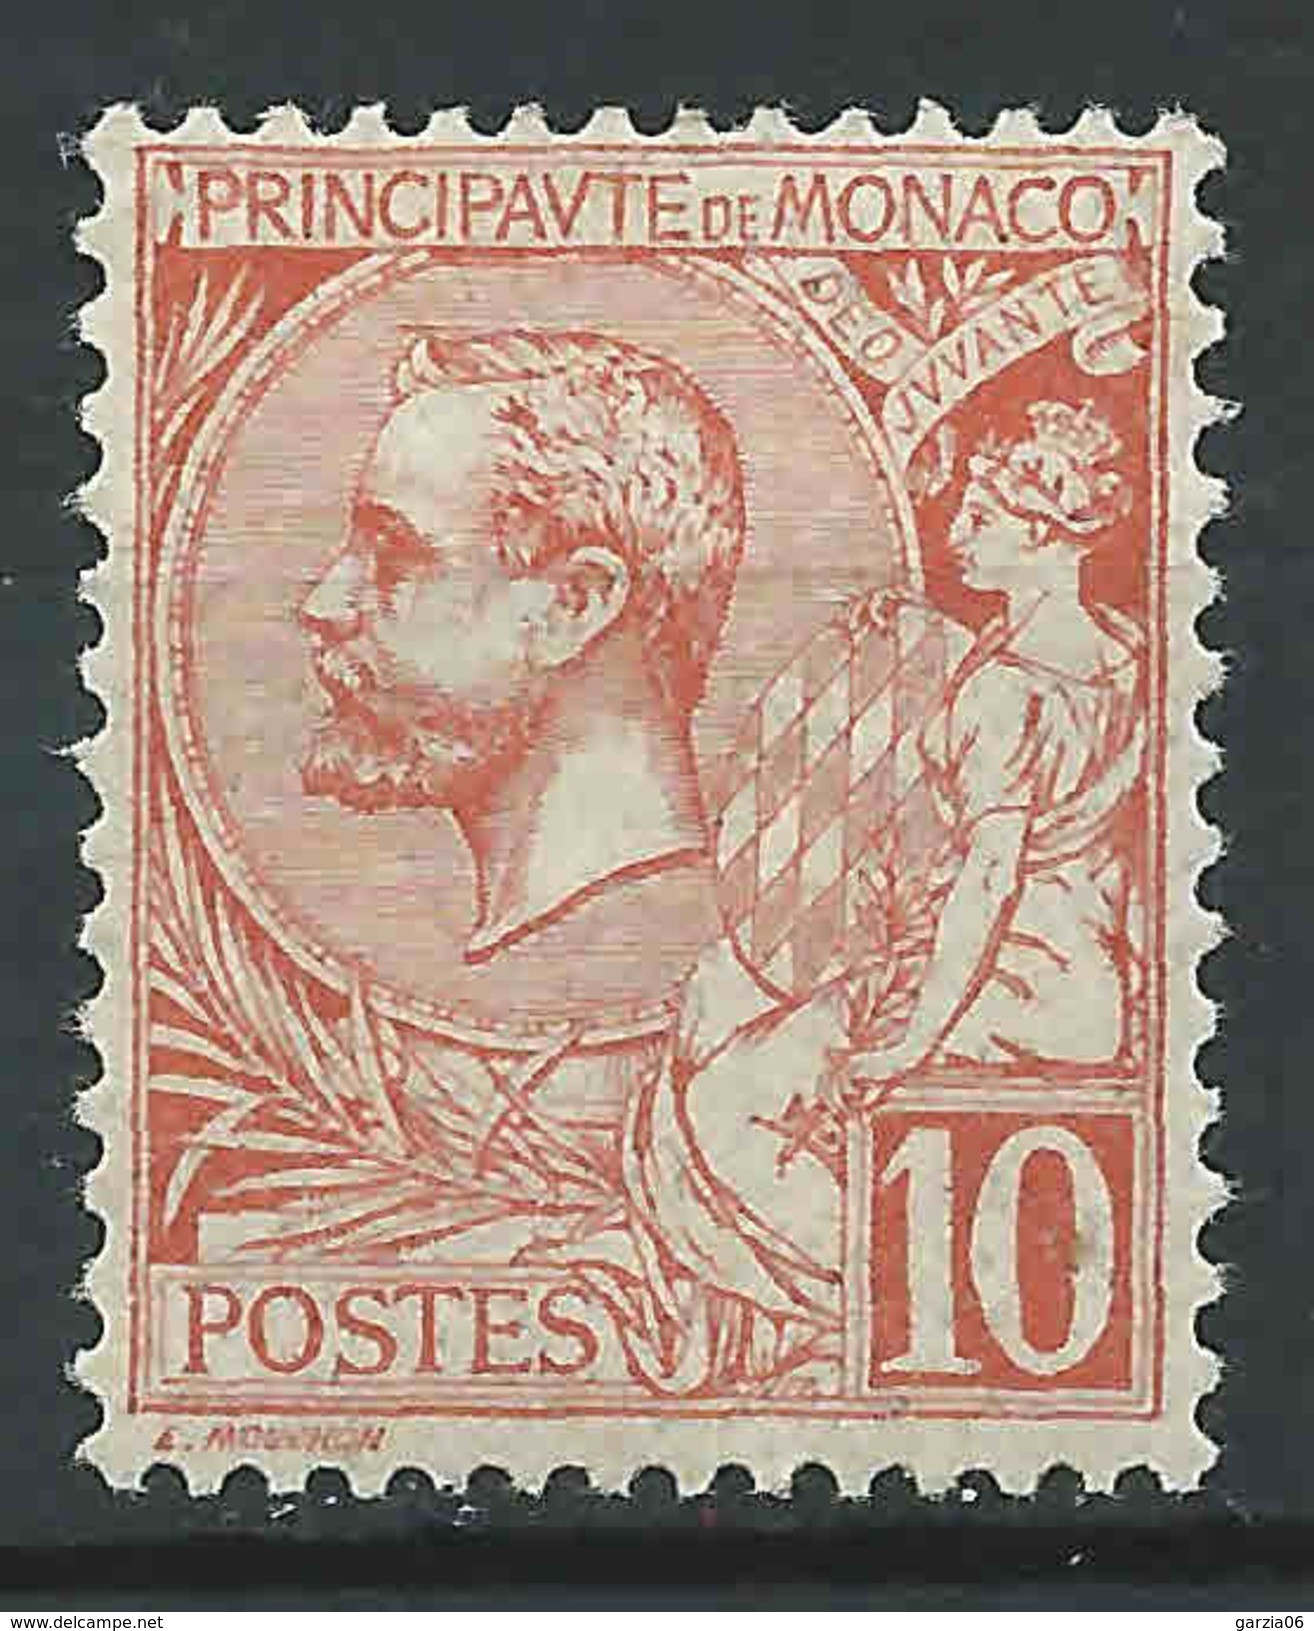 Monaco - 1901 -  Prince Albert 1ier - N° 23  -neuf * - MLH - Ongebruikt